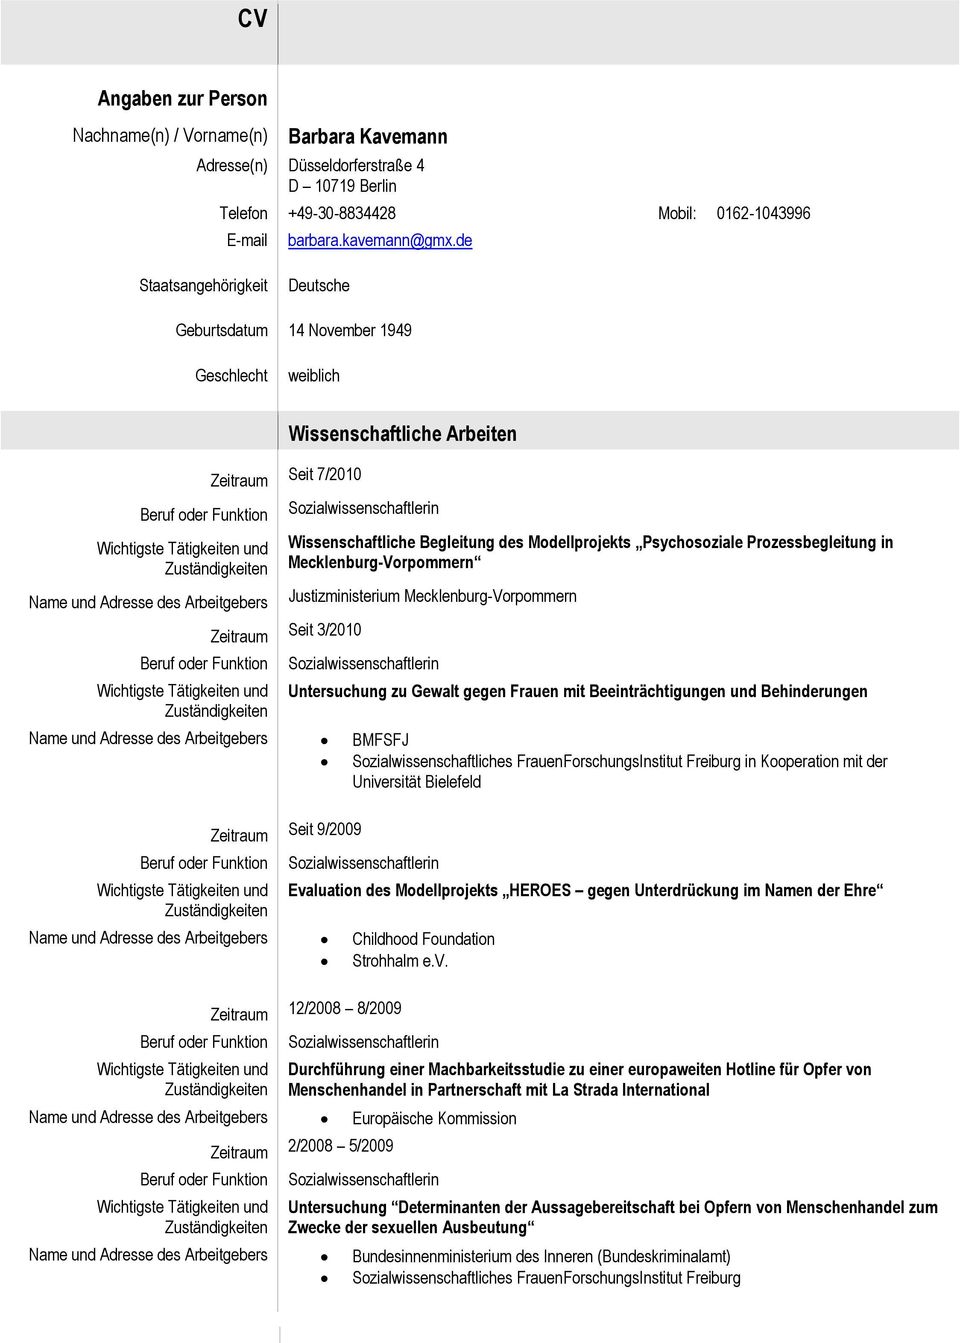 Prozessbegleitung in Mecklenburg-Vorpommern Zeitraum Seit 3/2010 Justizministerium Mecklenburg-Vorpommern Untersuchung zu Gewalt gegen Frauen mit Beeinträchtigungen und Behinderungen BMFSFJ in